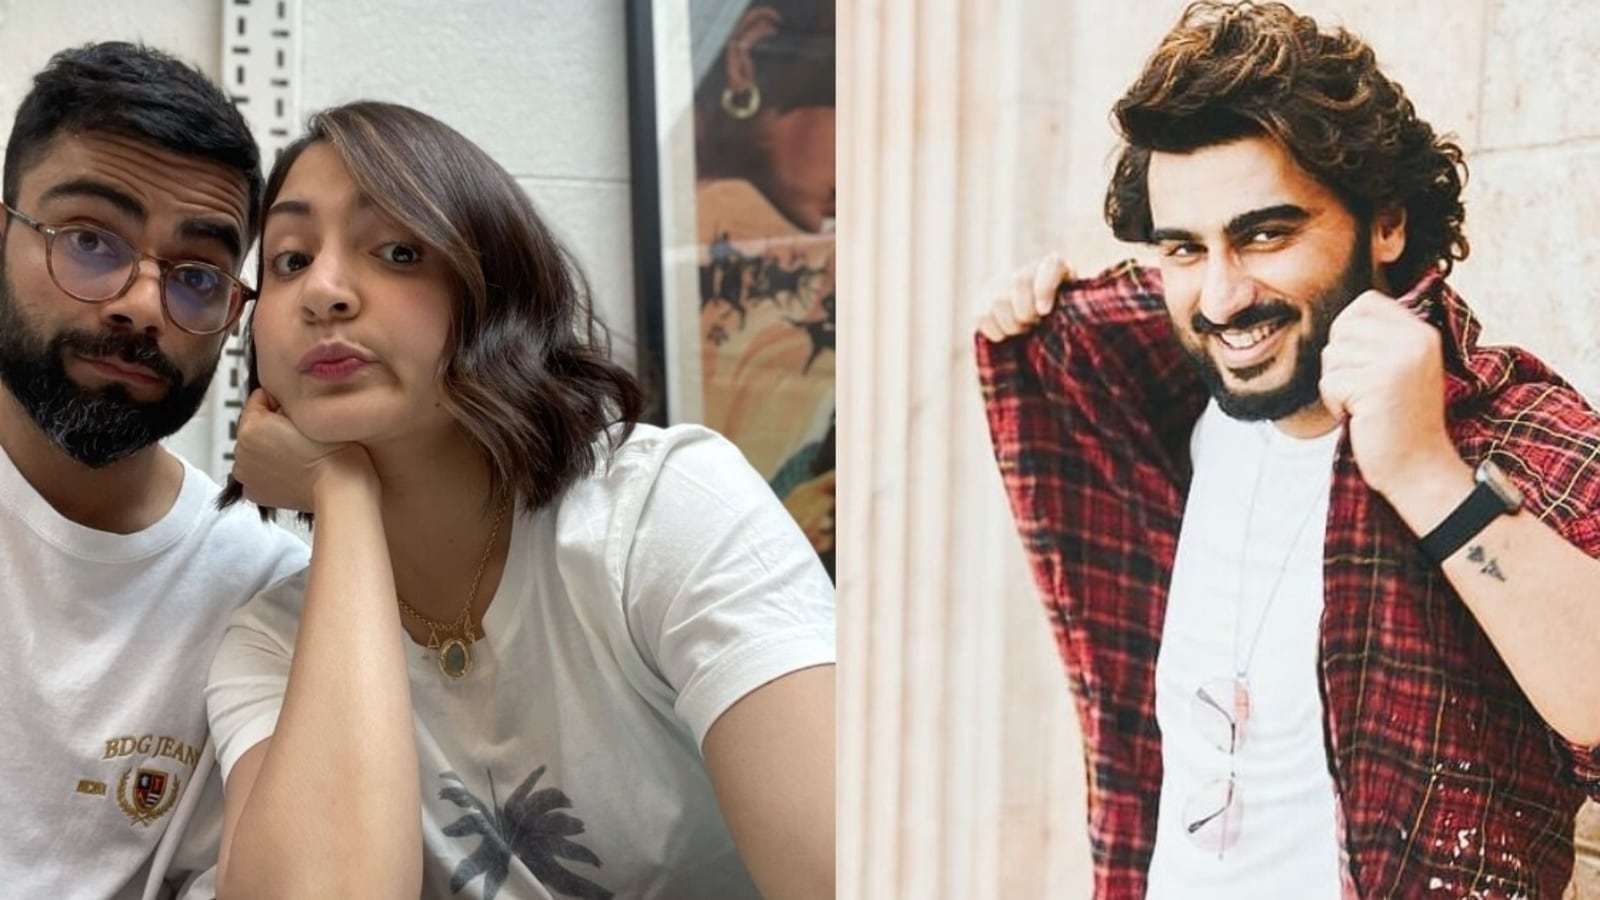 Arjun Kapoor enfurece a Anushka Sharma después de que Virat Kohli la llamara «mi roca», diciendo que es Desi Dwayne Johnson |  Bollywood